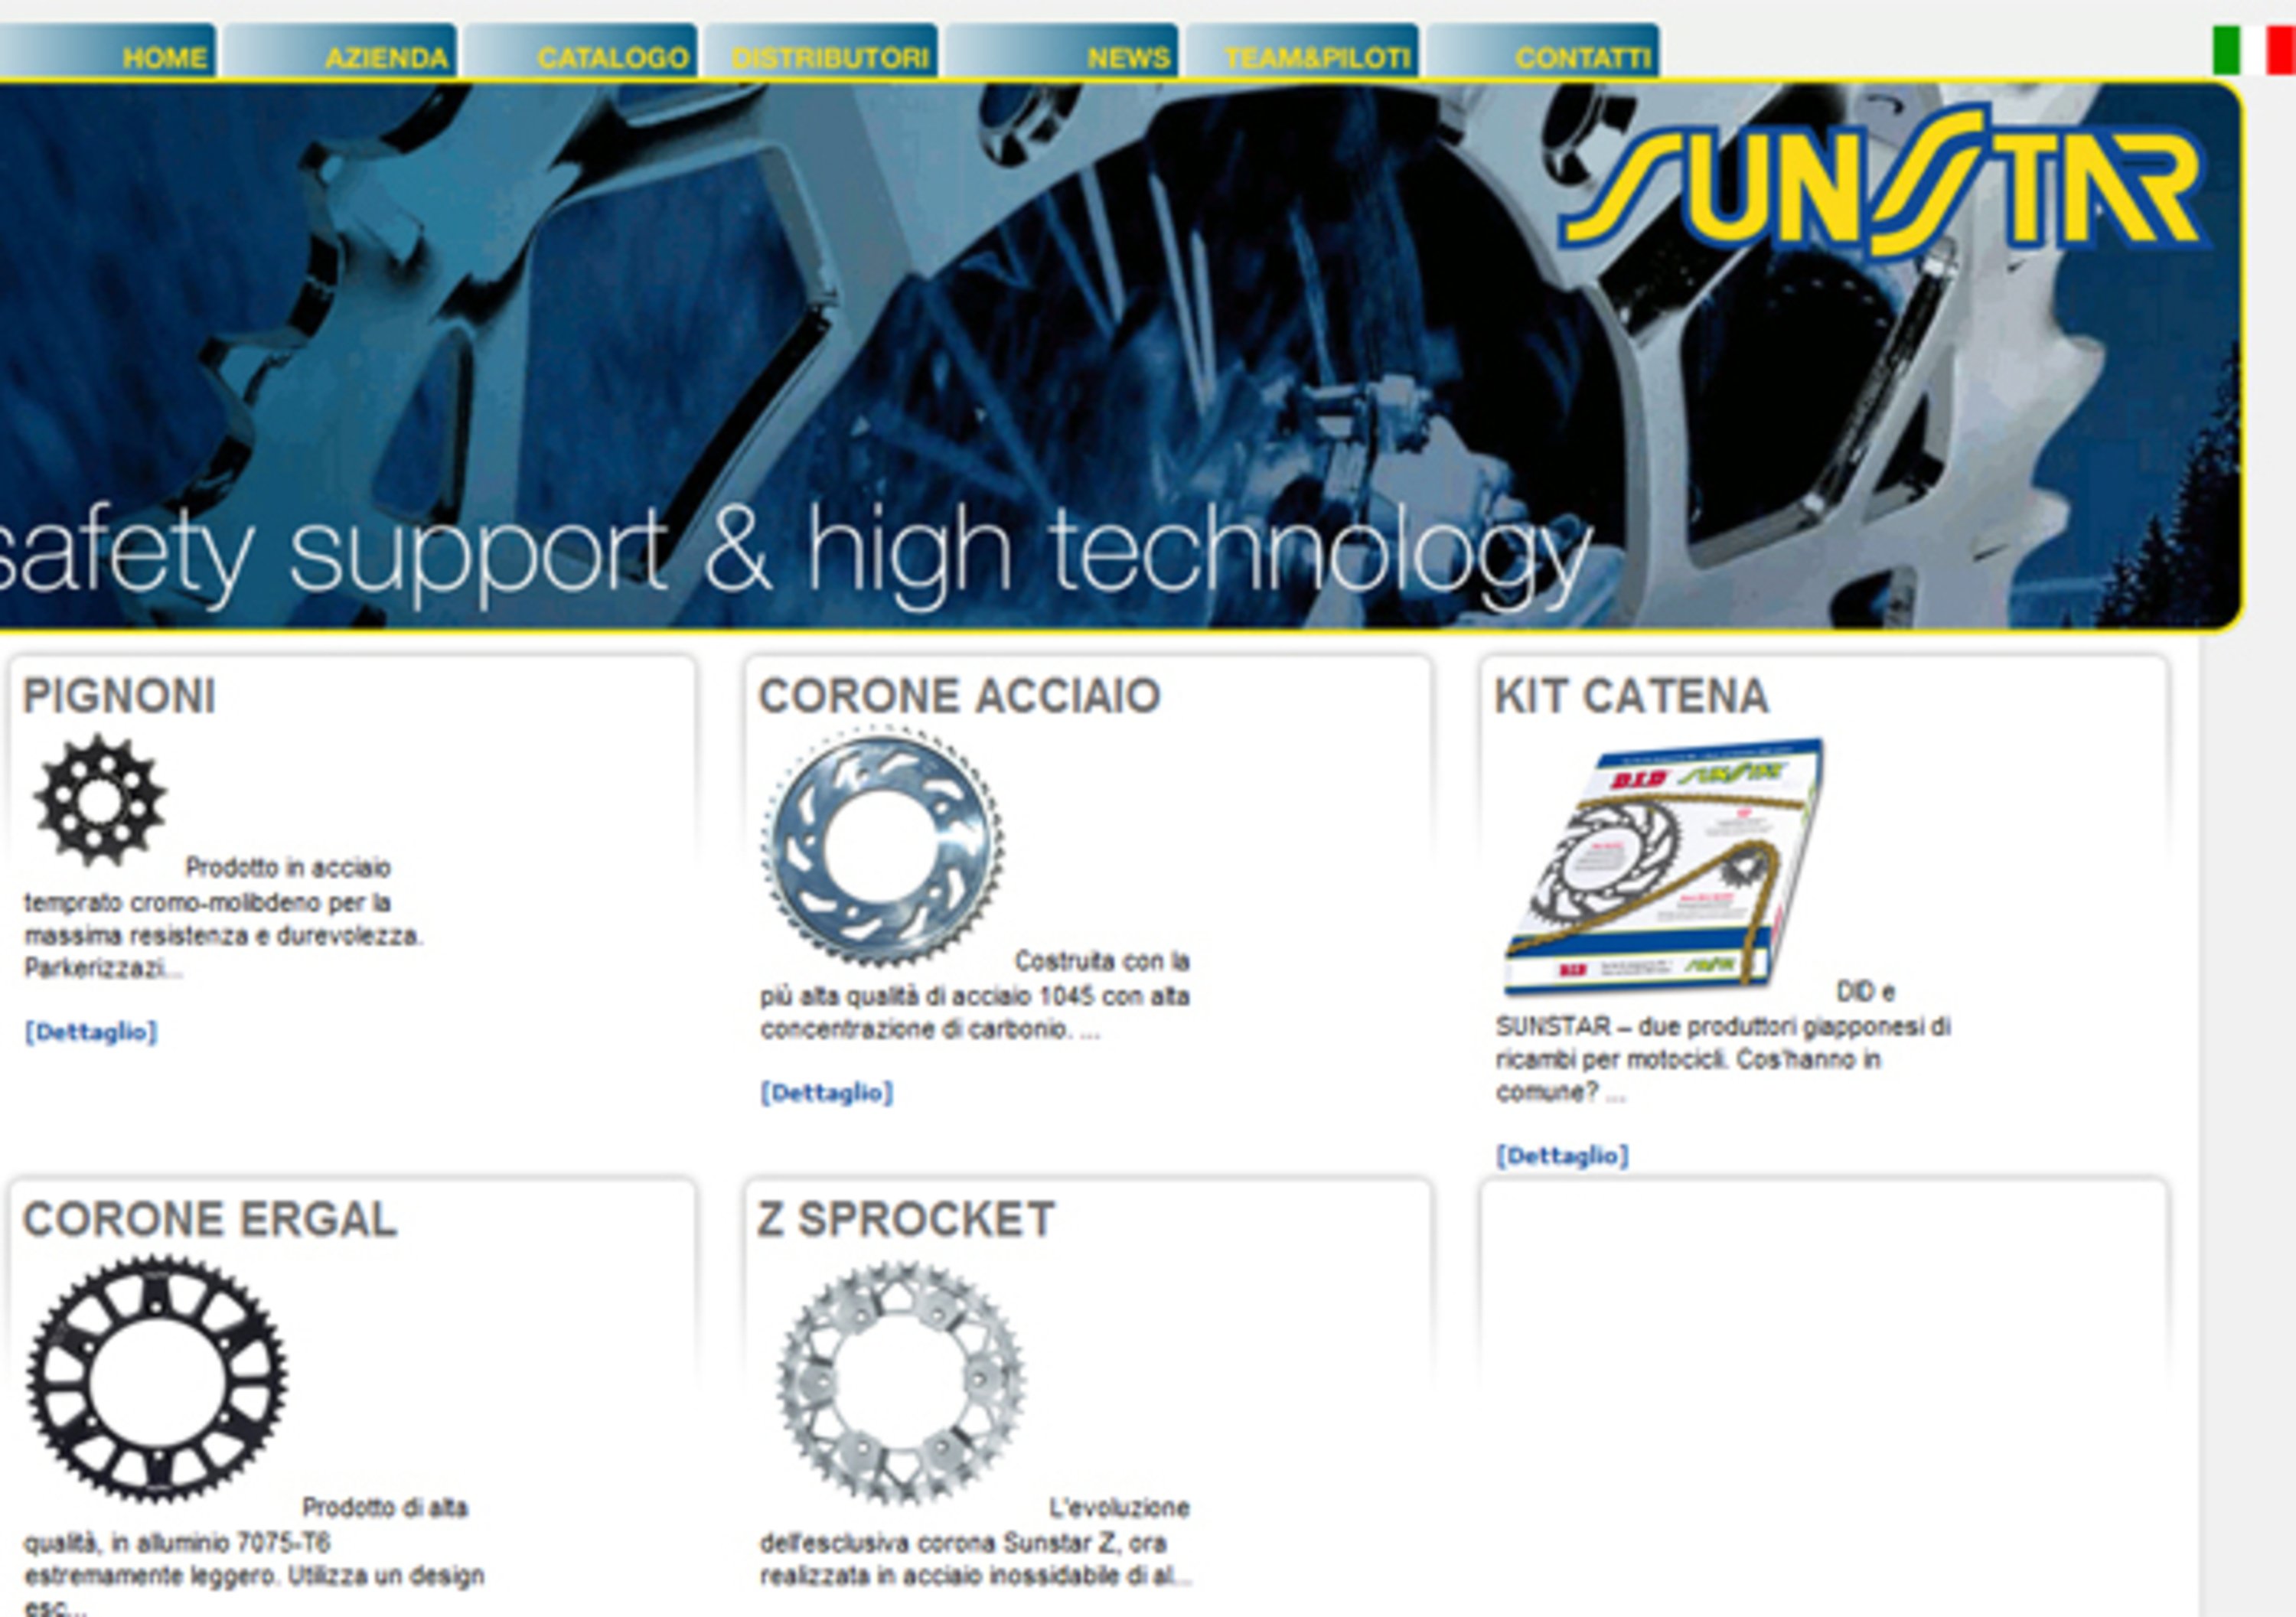 Nuovo sito web per Sunstar